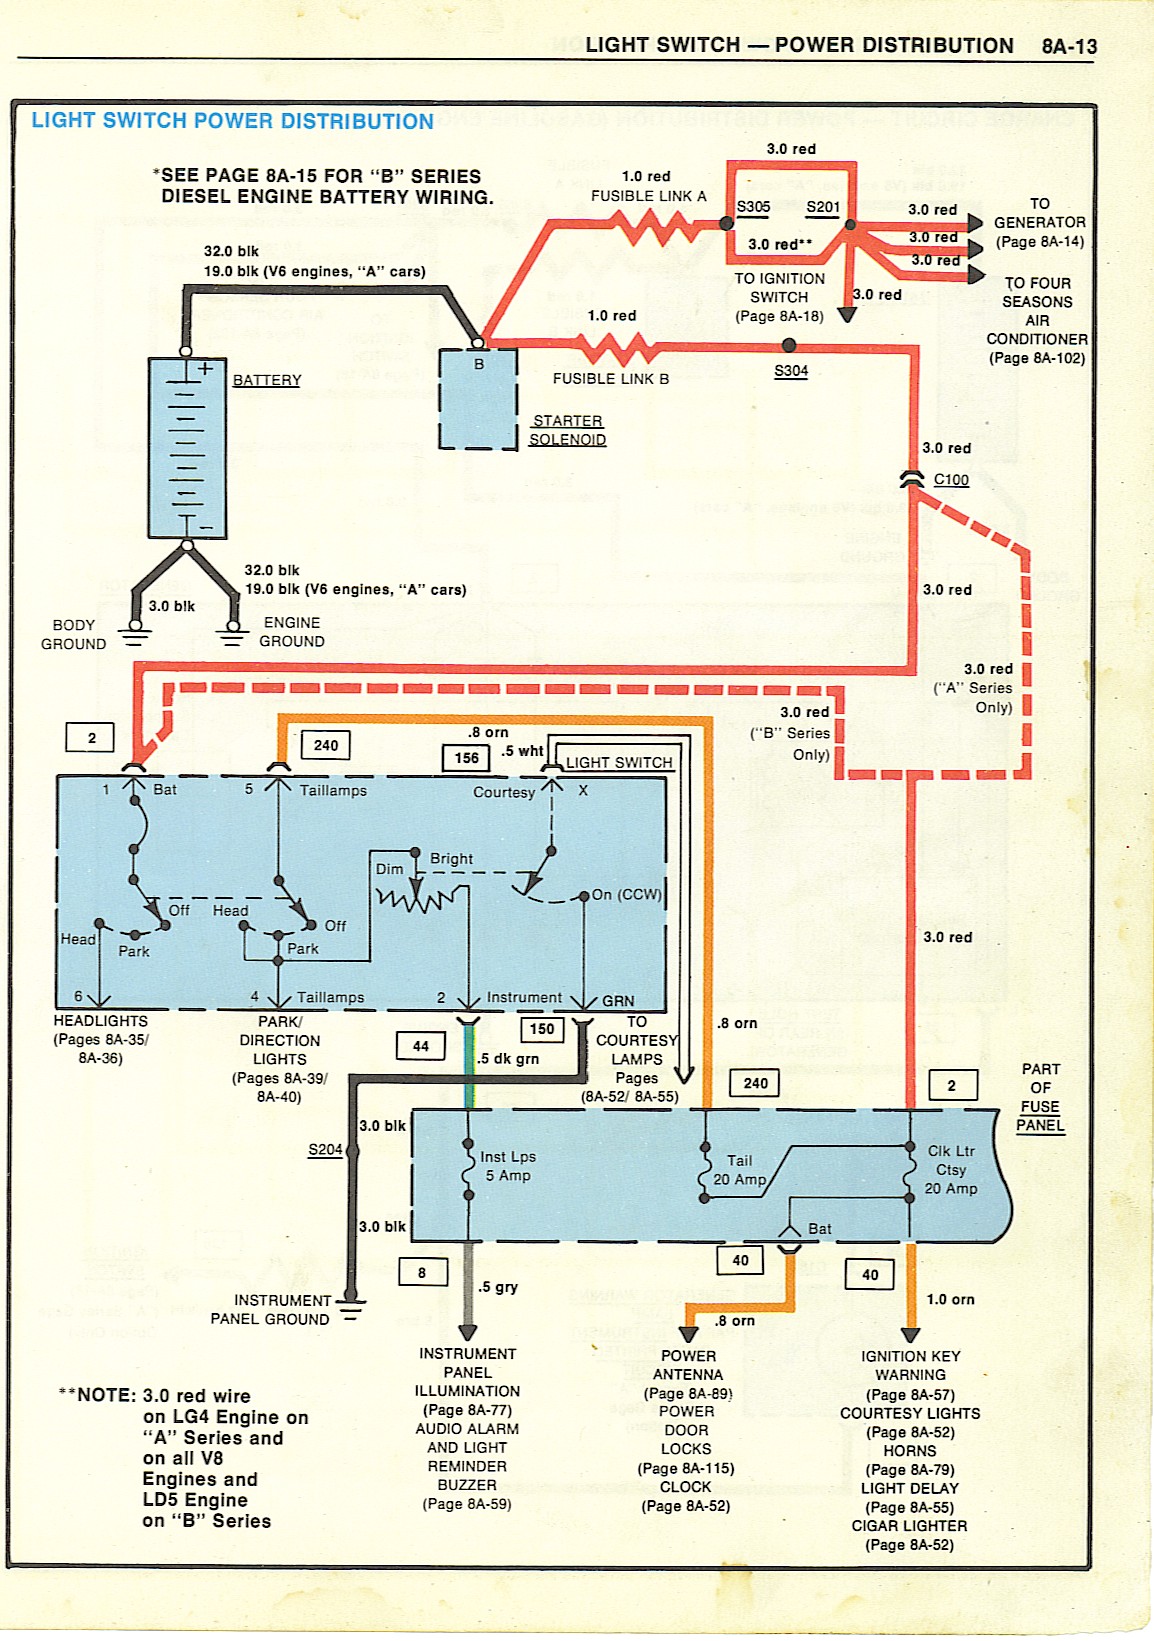 Wiring Diagrams 1980 camaro fuse panel diagram 